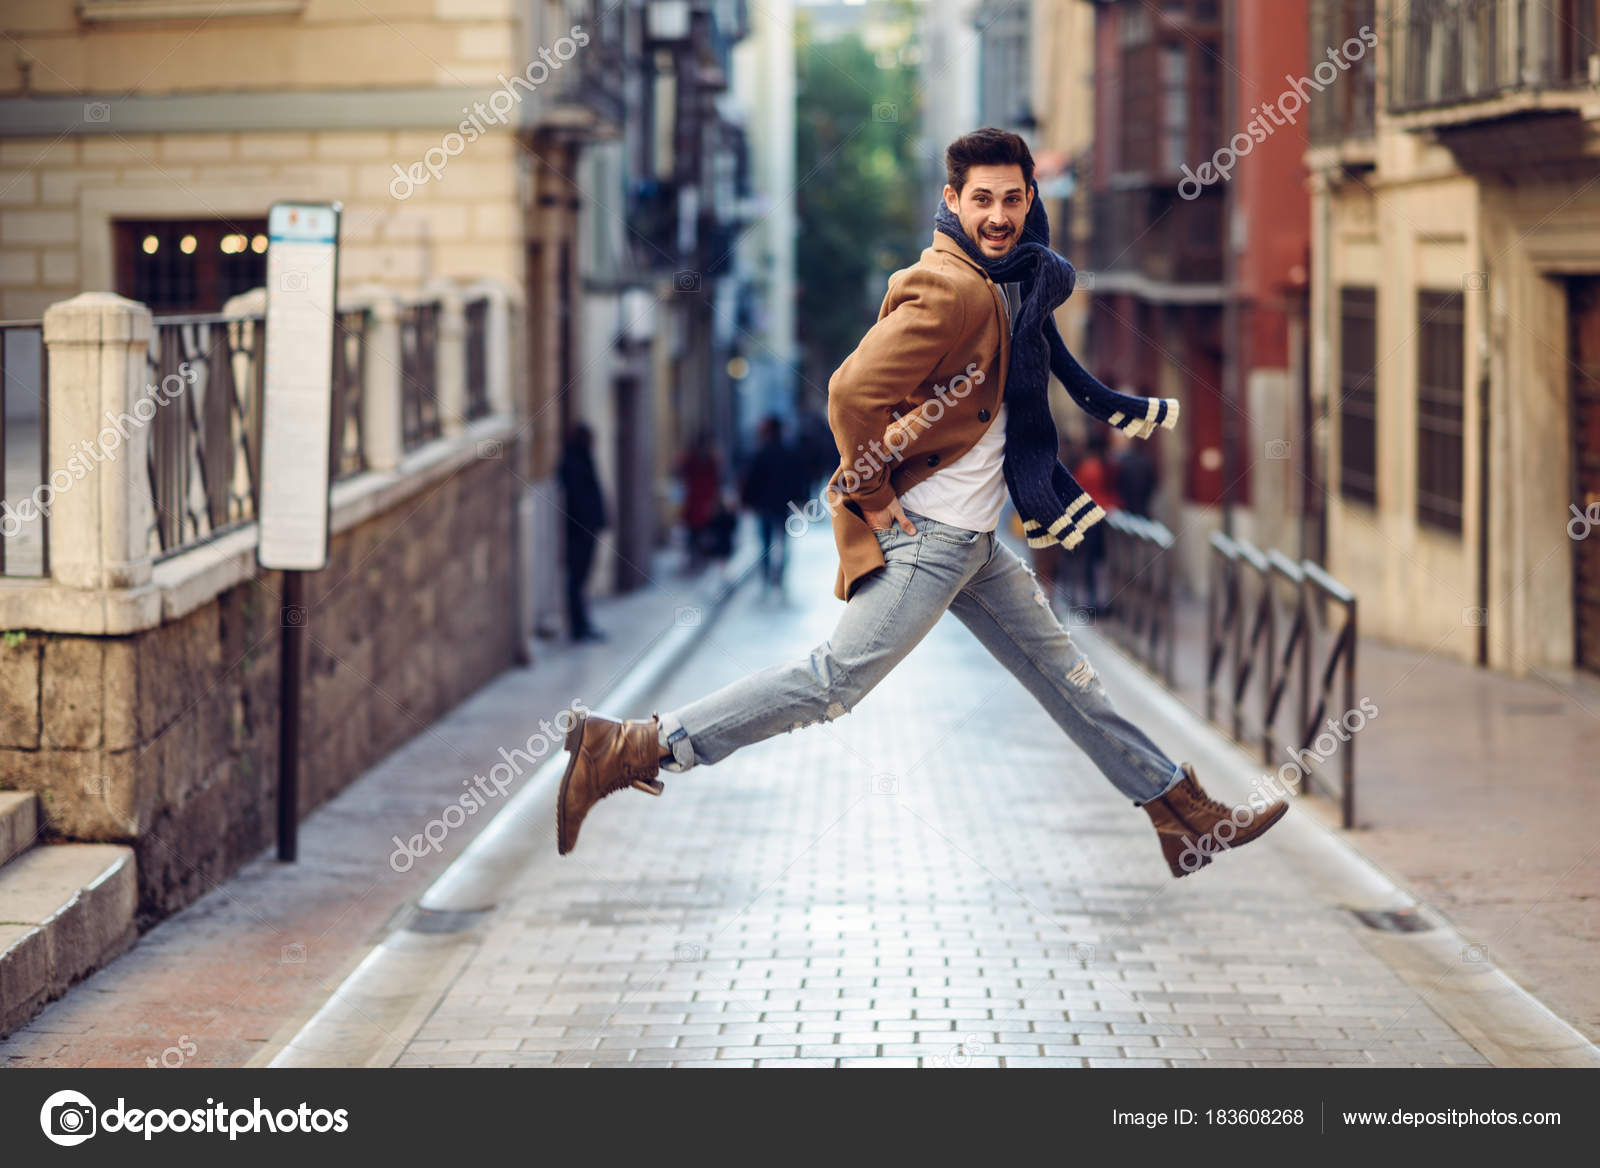 Joven hombre feliz saltando con ropa de en urbano: fotografía stock © javiindy #183608268 | Depositphotos